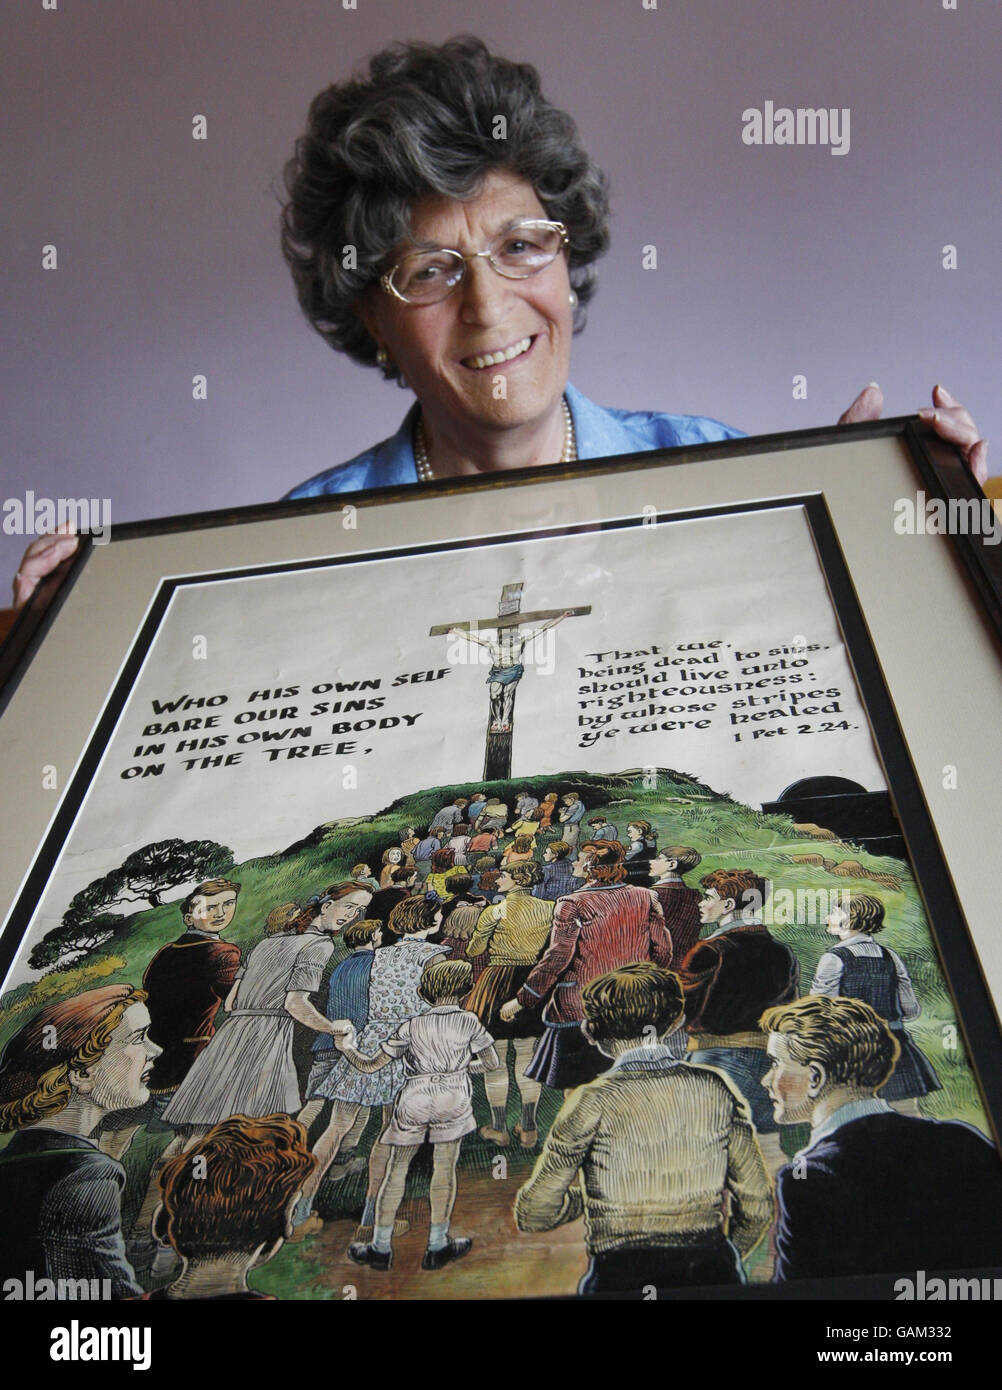 Jean Kinnell con un dipinto che raffigura la Crocifissione di Cristo del fumettista e creatore dei fumetti di Broons Dudley D Watkins. Foto Stock